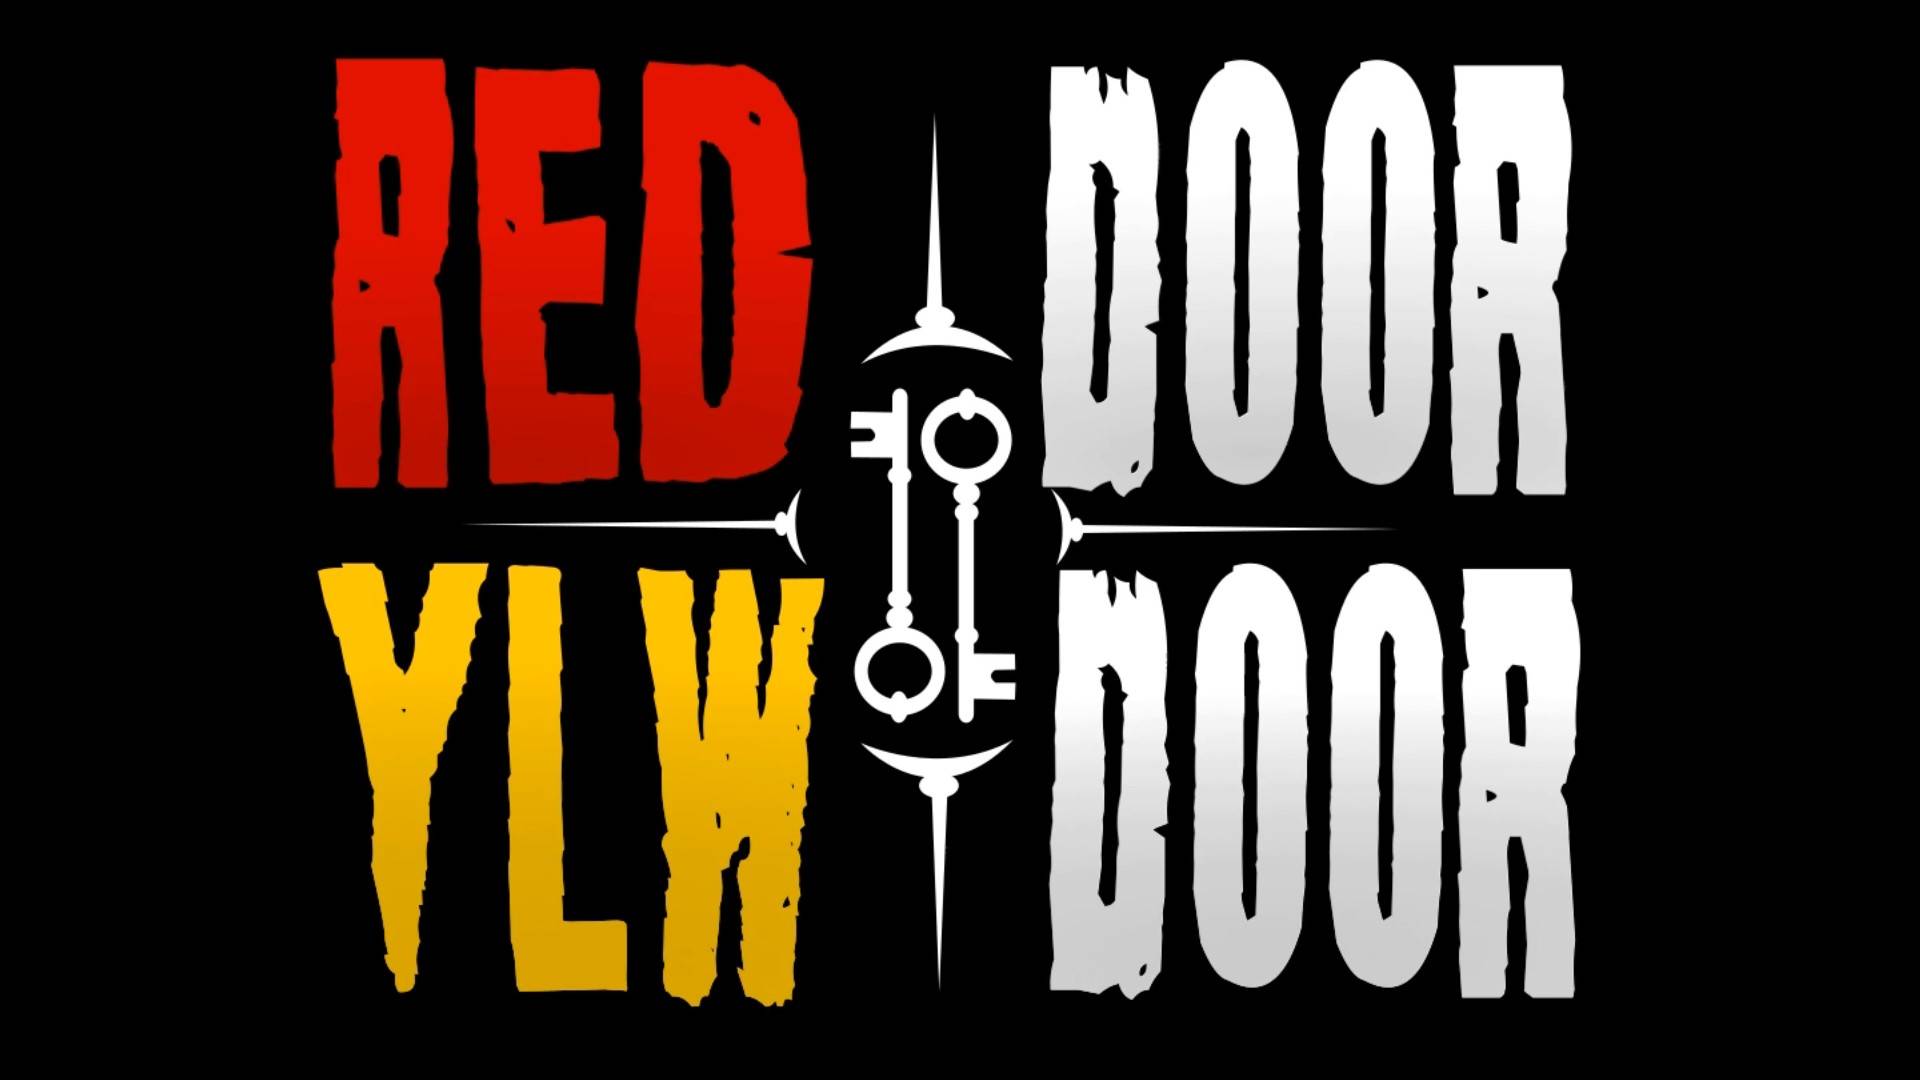 Скучно и однообразно • Red Door, Yellow Door Demo #хоррорканал